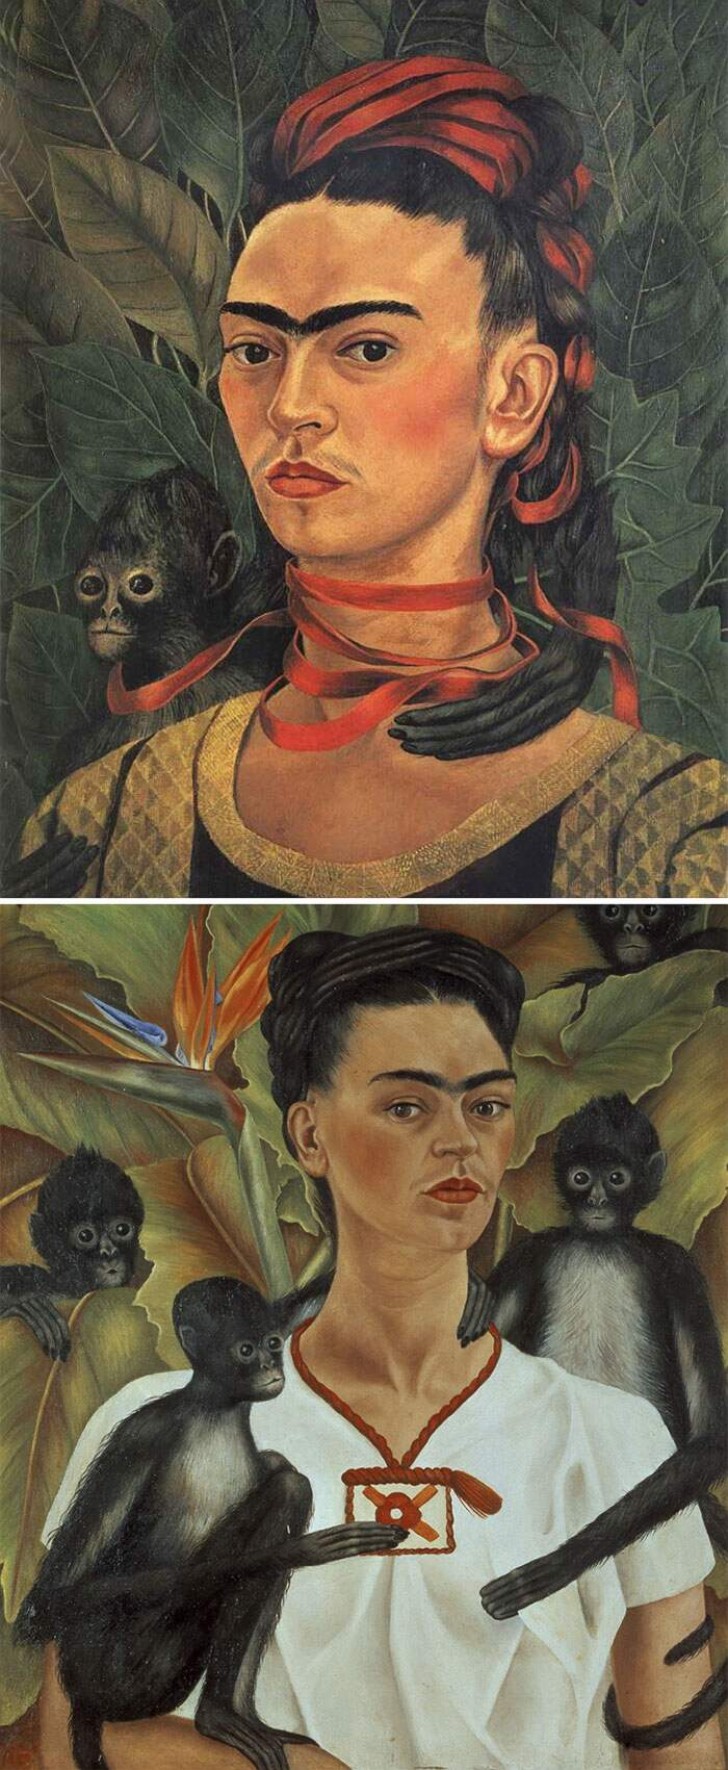 Wenn auf allen Bildern eine Frau mit einer Monobraue abgebildet ist, dann ist es Frida Kahlo!